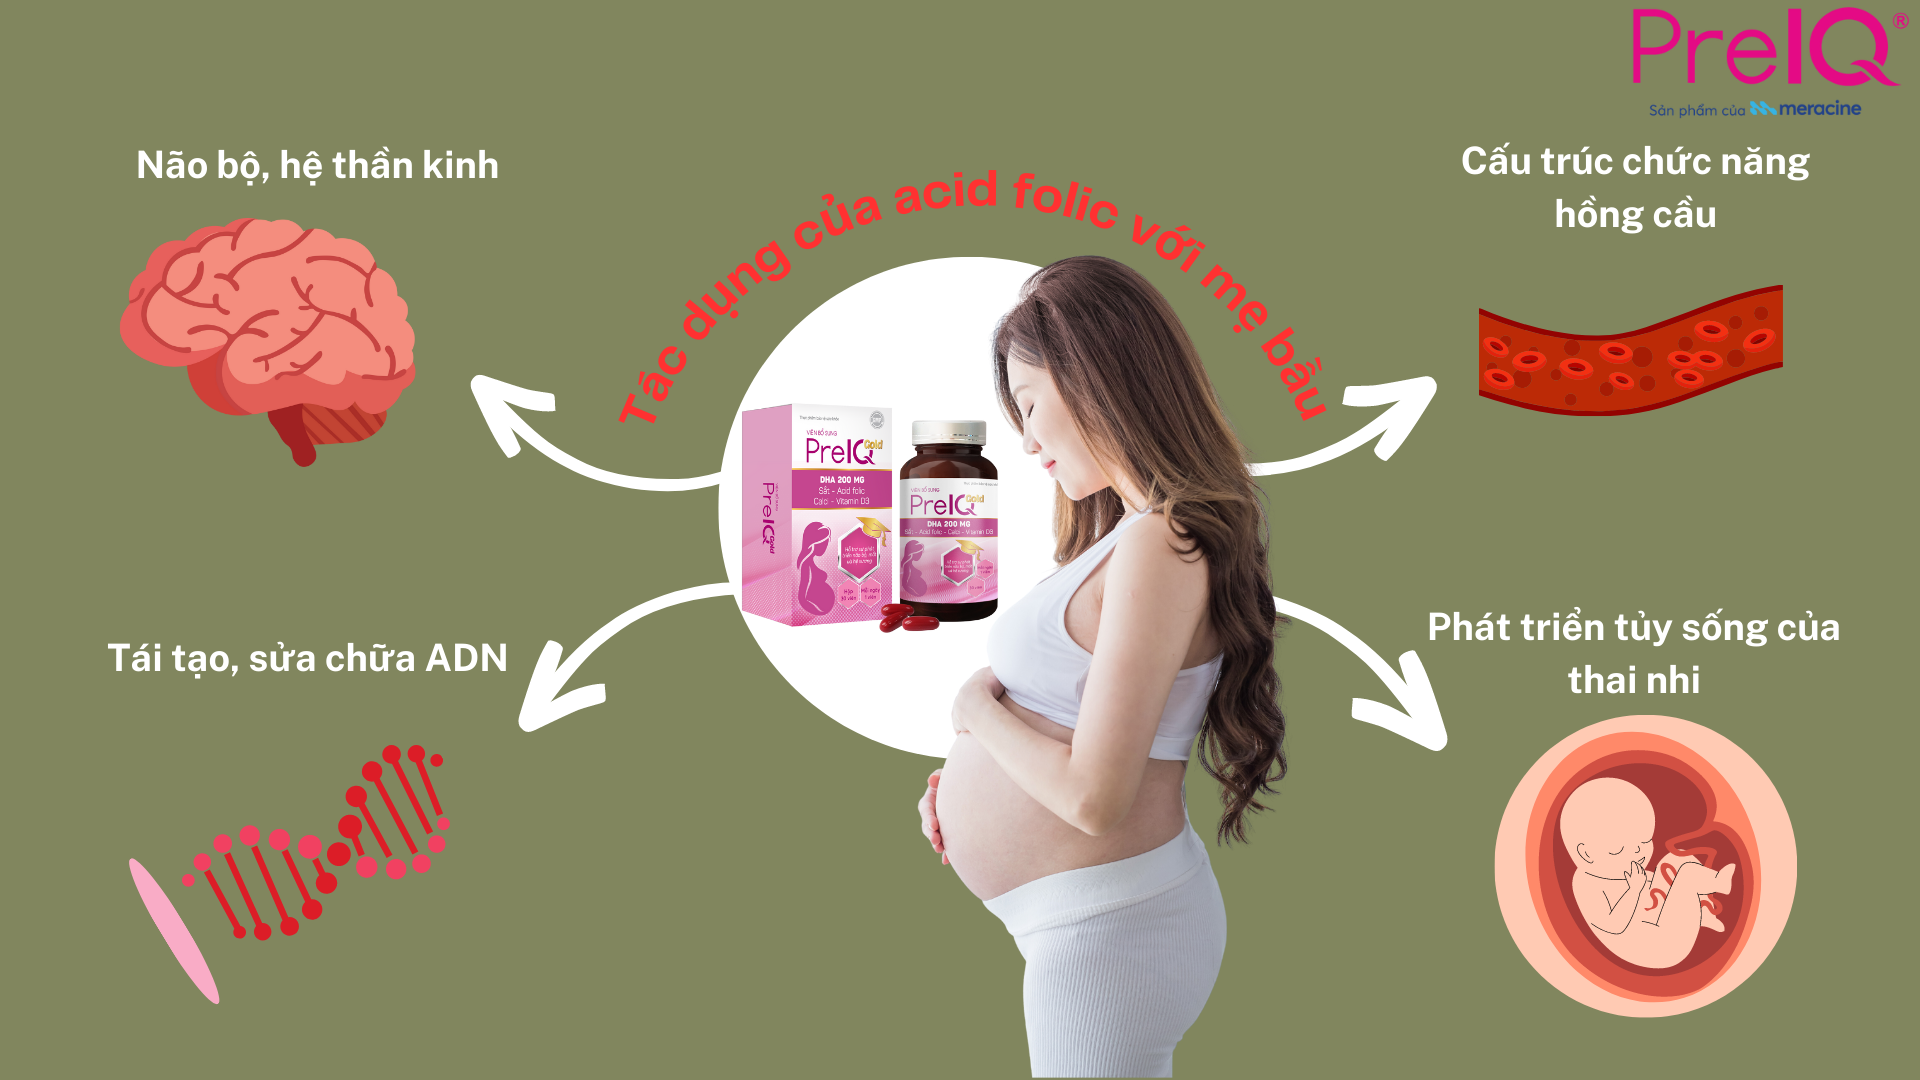 Mẹ bầu uống acid folic giúp não bộ và tủy sống của thai nhi phát triển khỏe mạnh